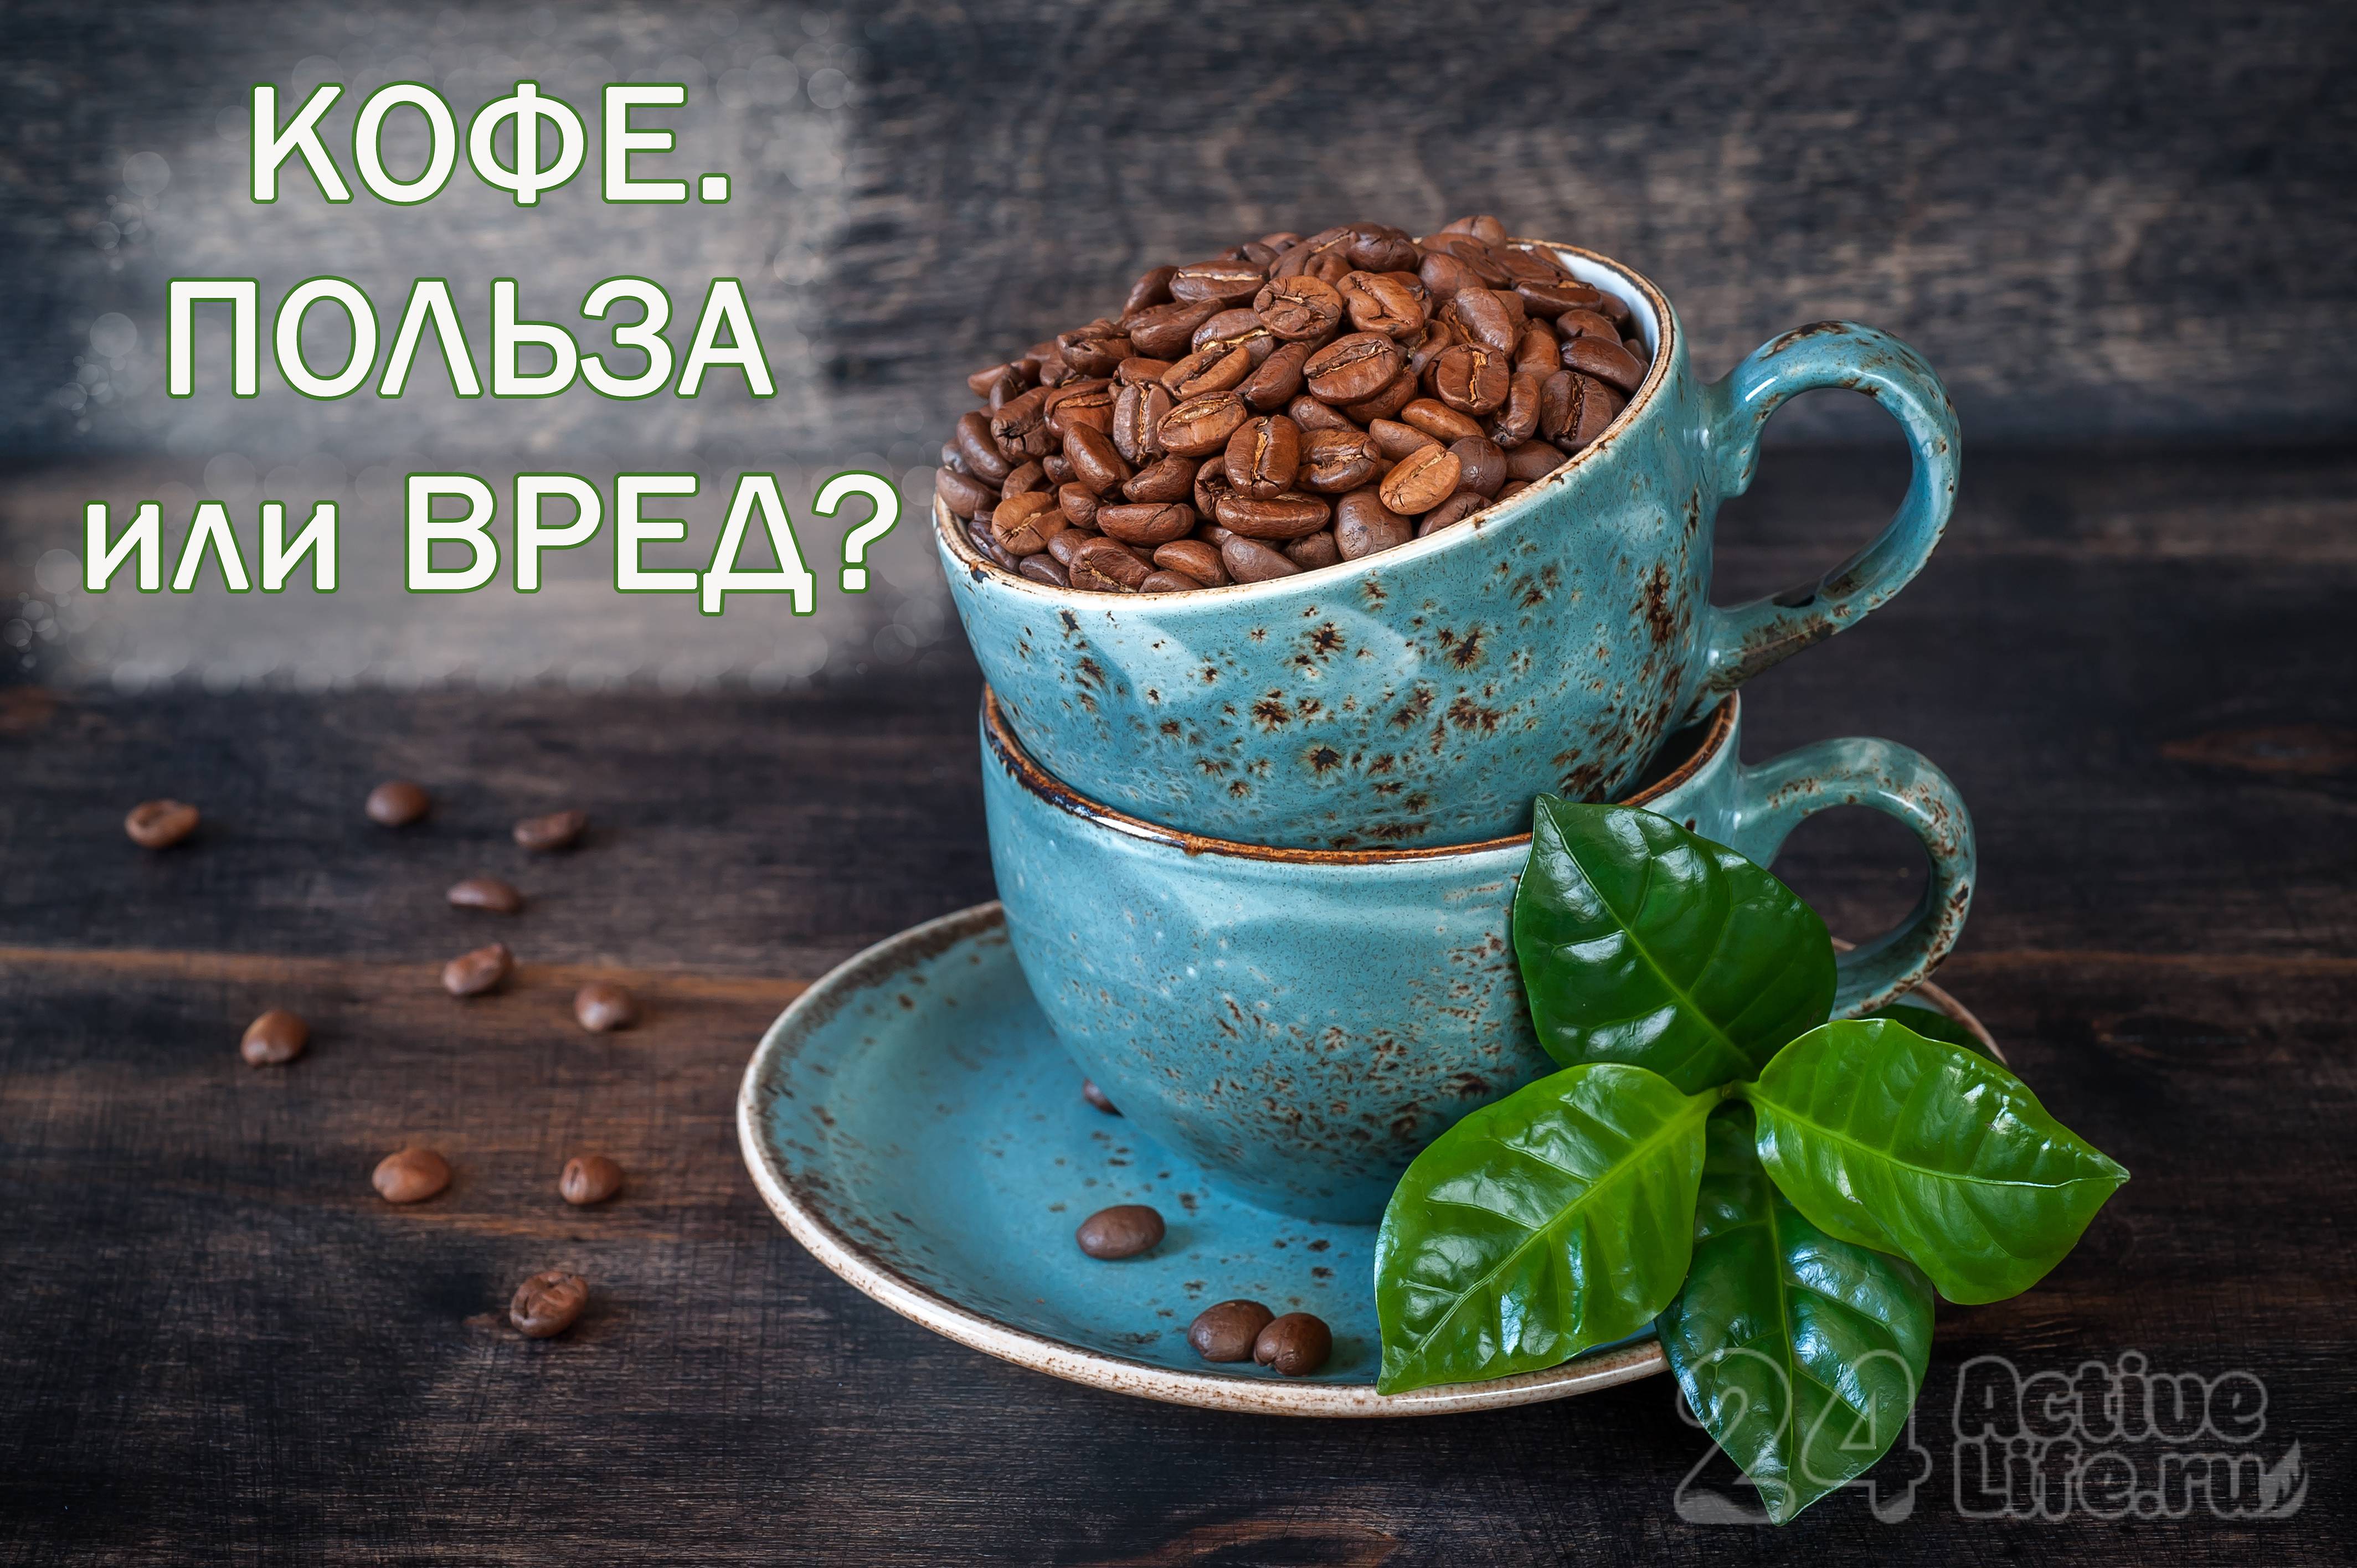 Утренний кофе: какой кофе лучше пить утром?